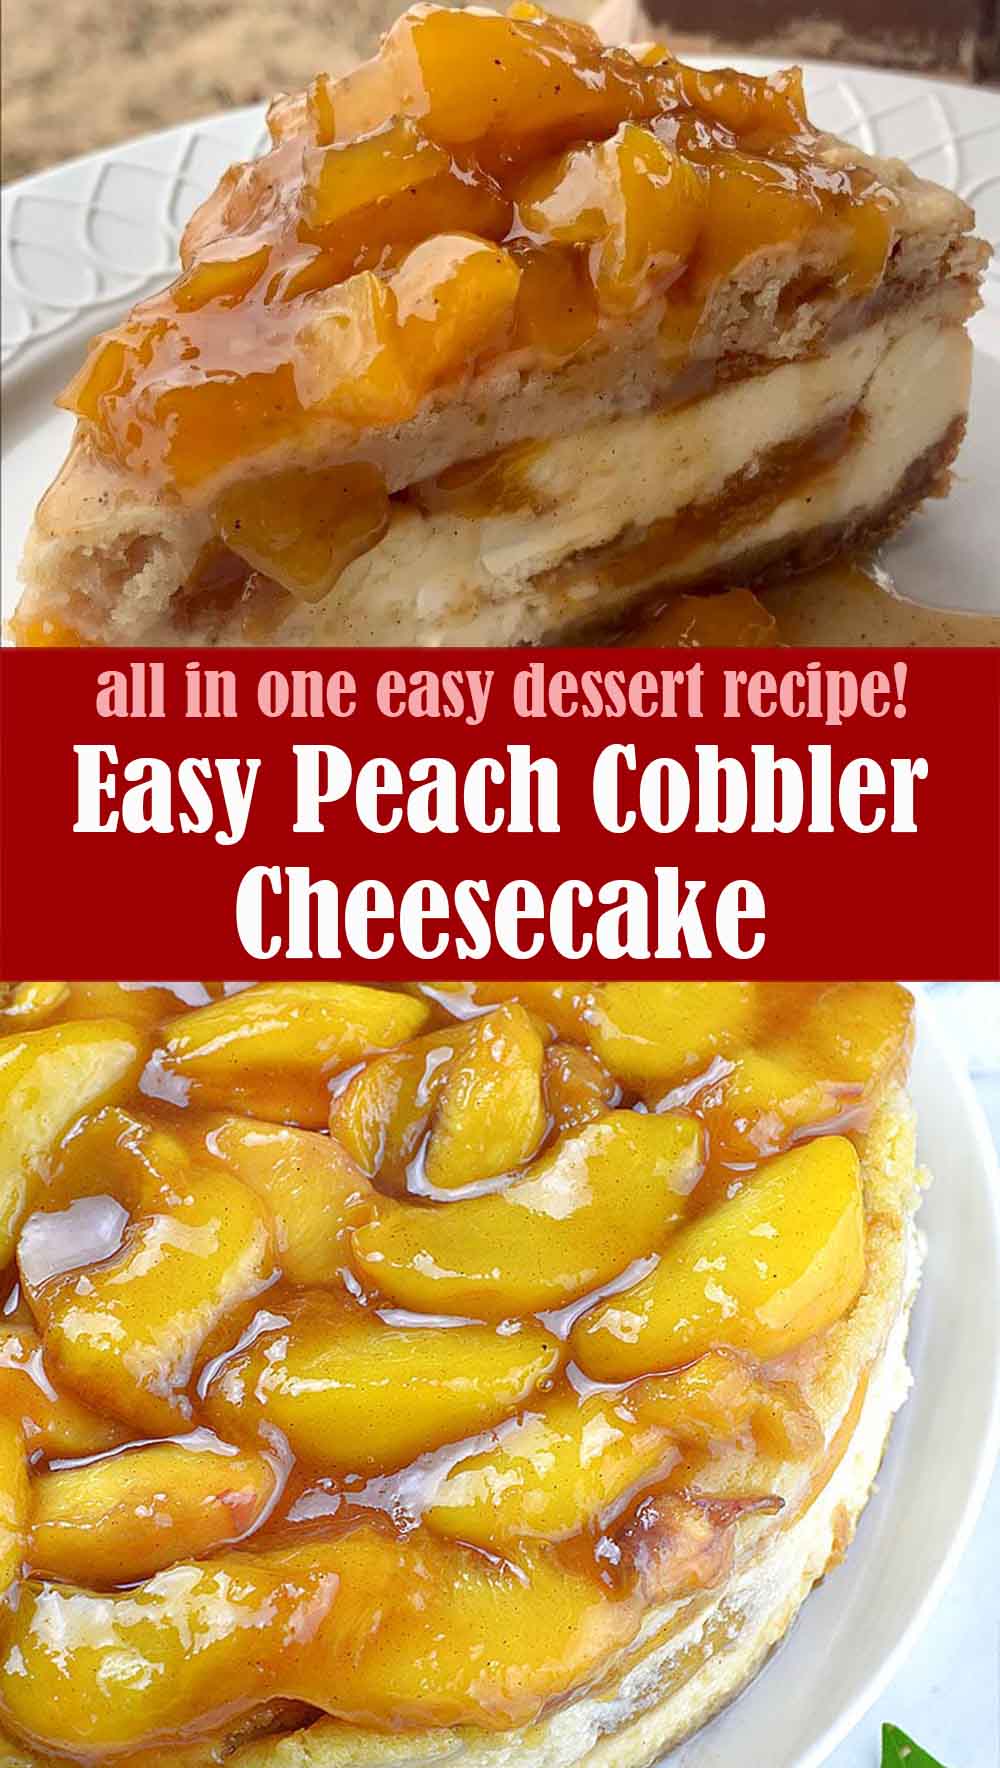 Easy Peach Cobbler Cheesecake